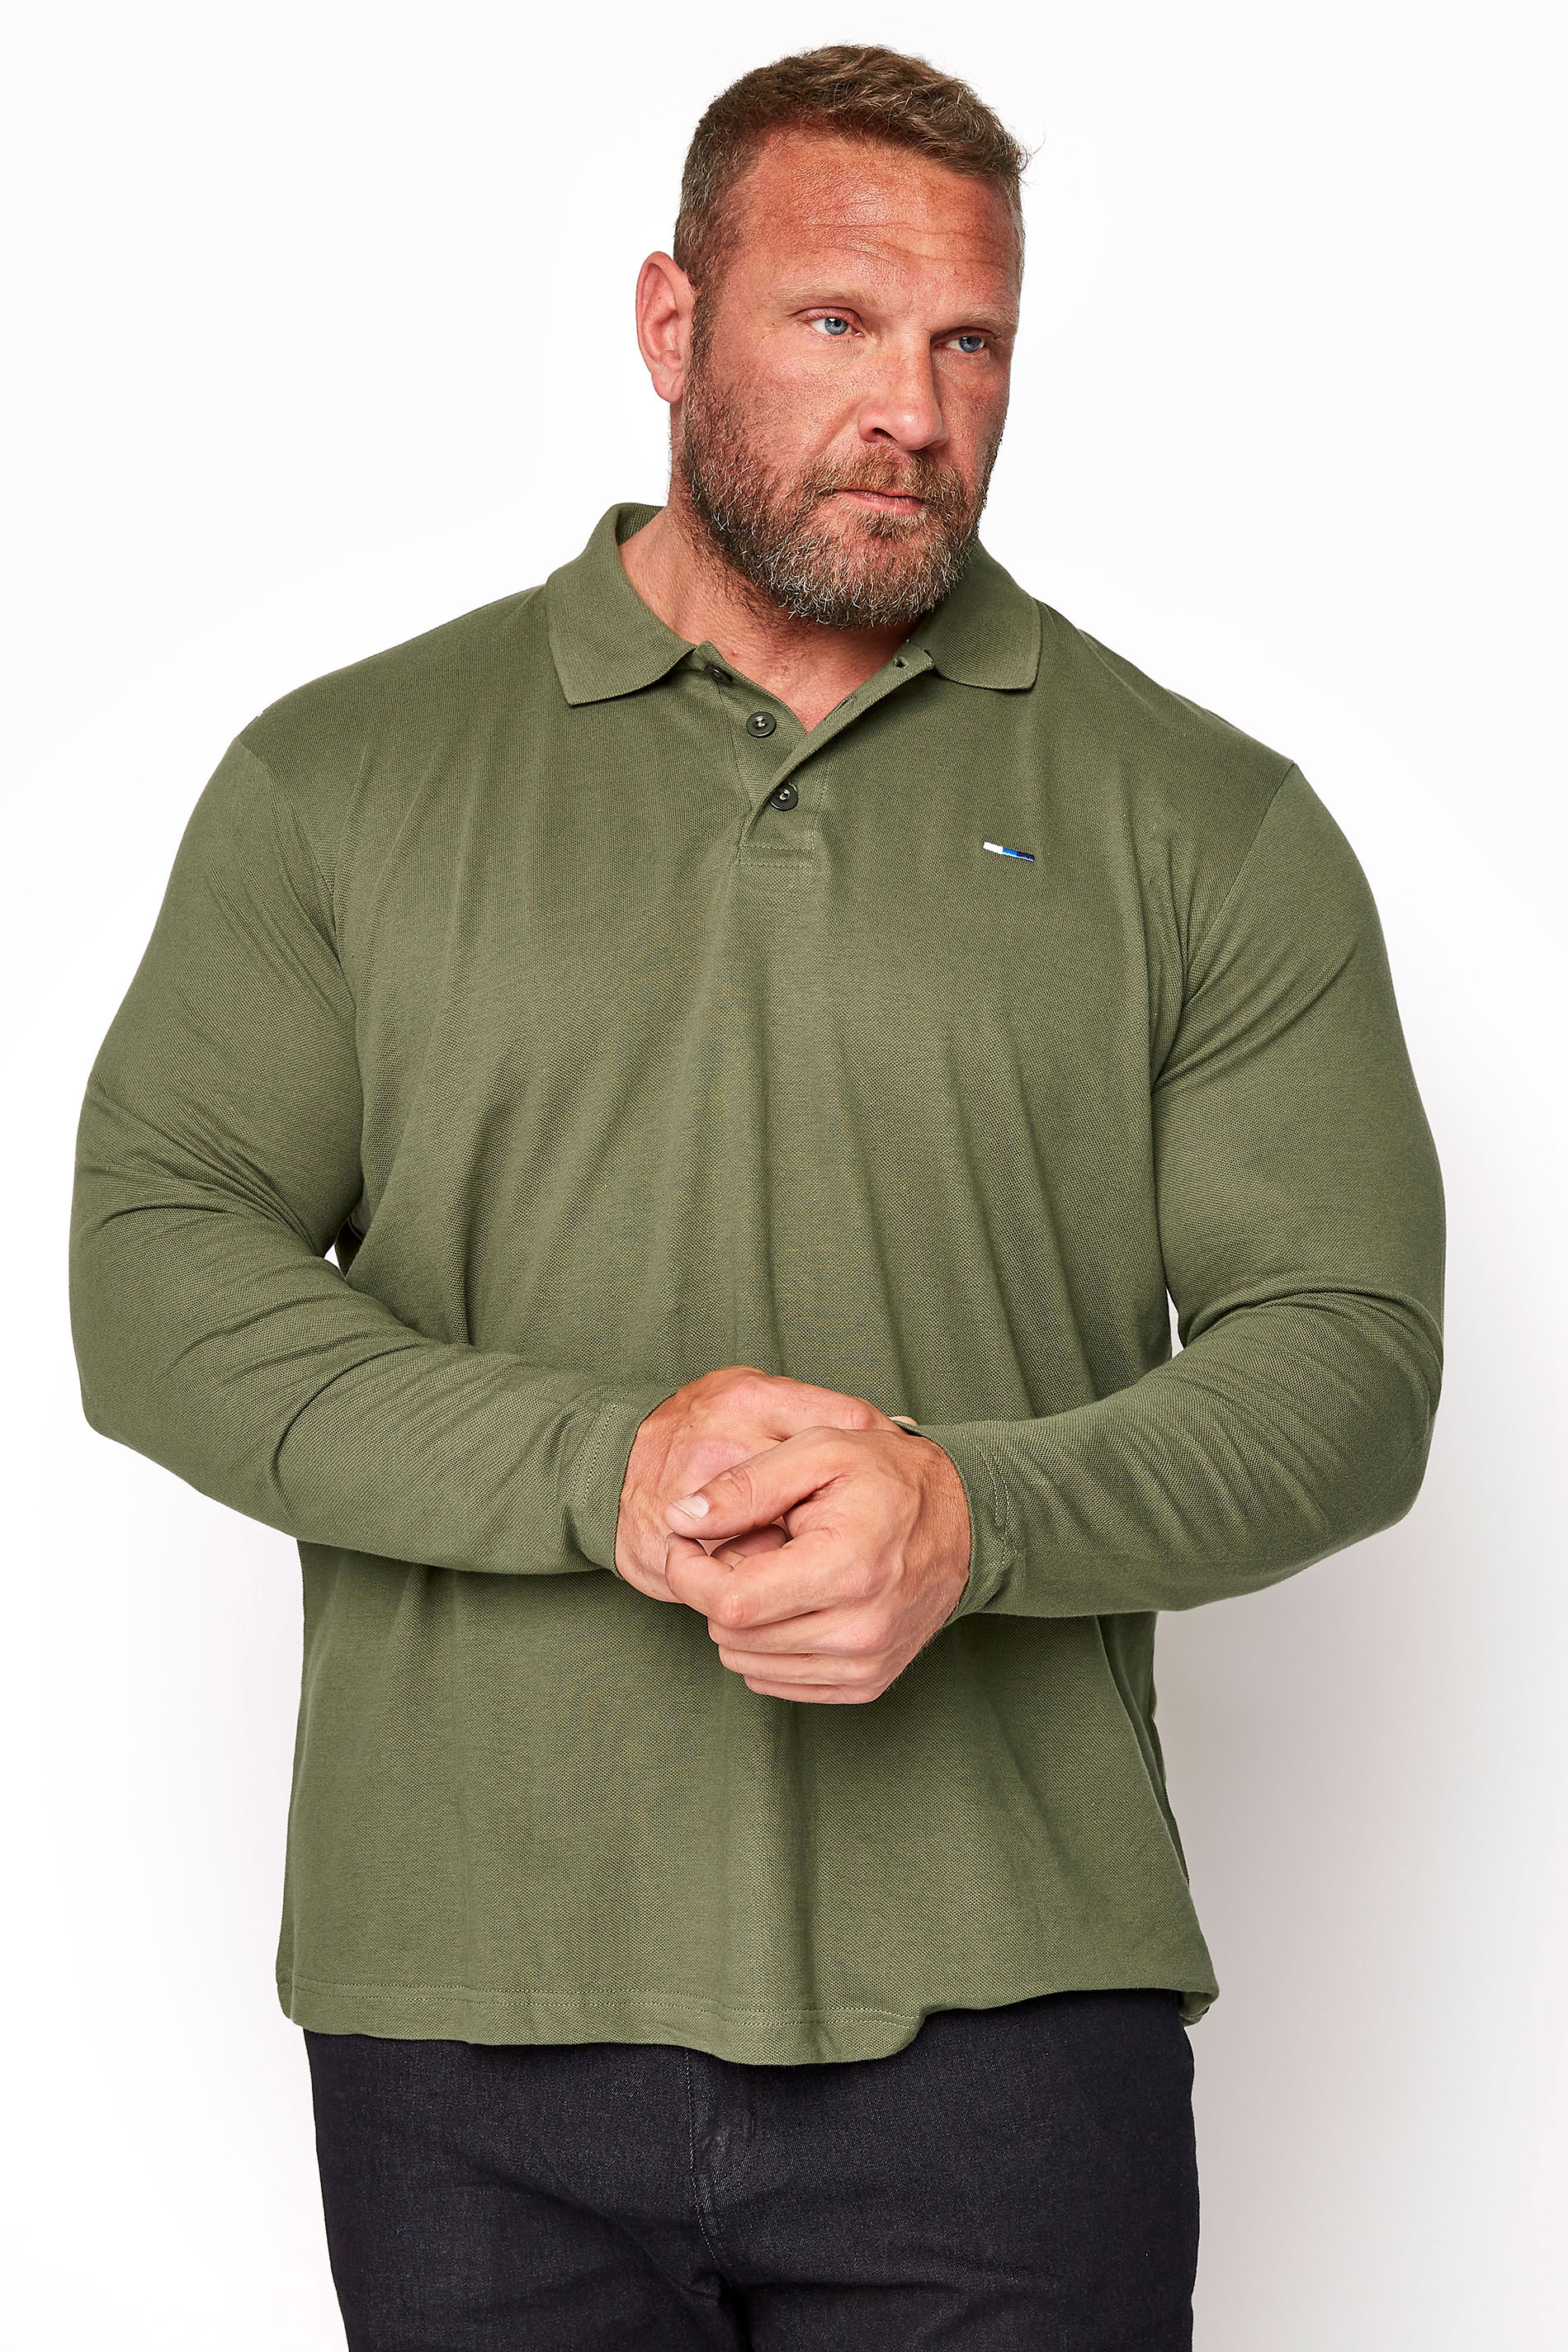 BadRhino Khaki Green Essential Long Sleeve Polo Shirt | BadRhino 1